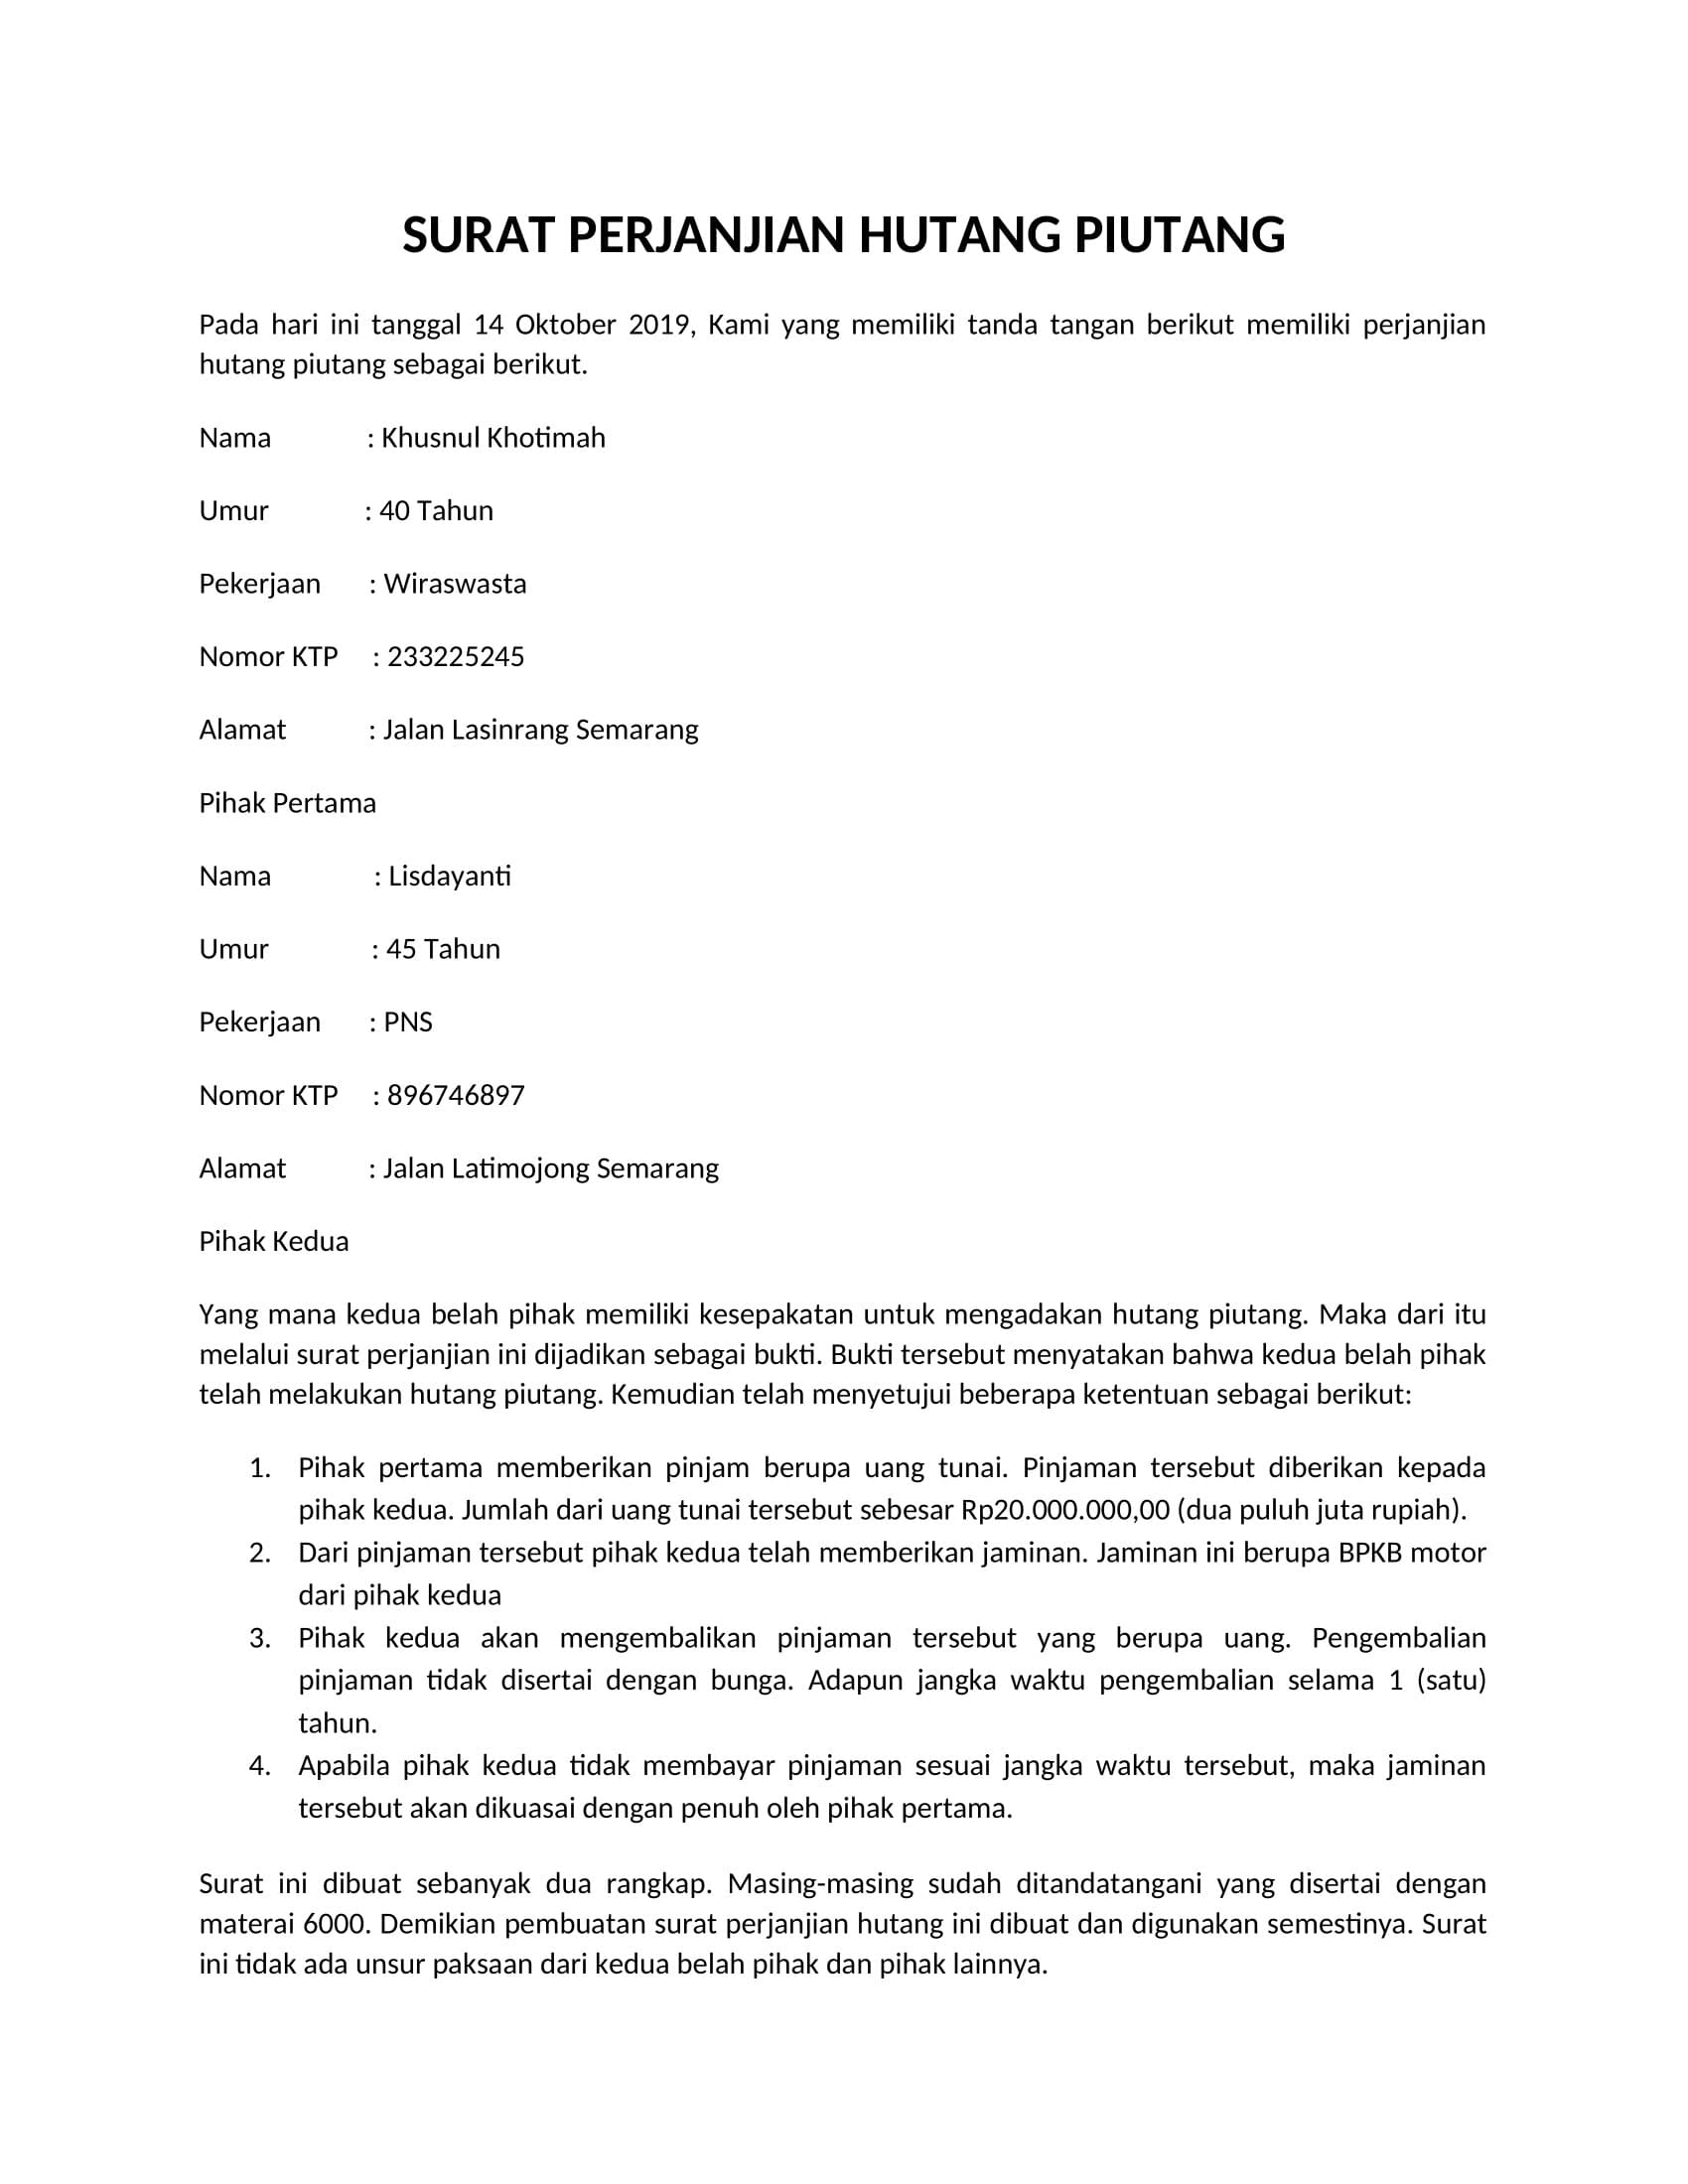 Detail Contoh Surat Pernyataan Hutang Piutang Nomer 18